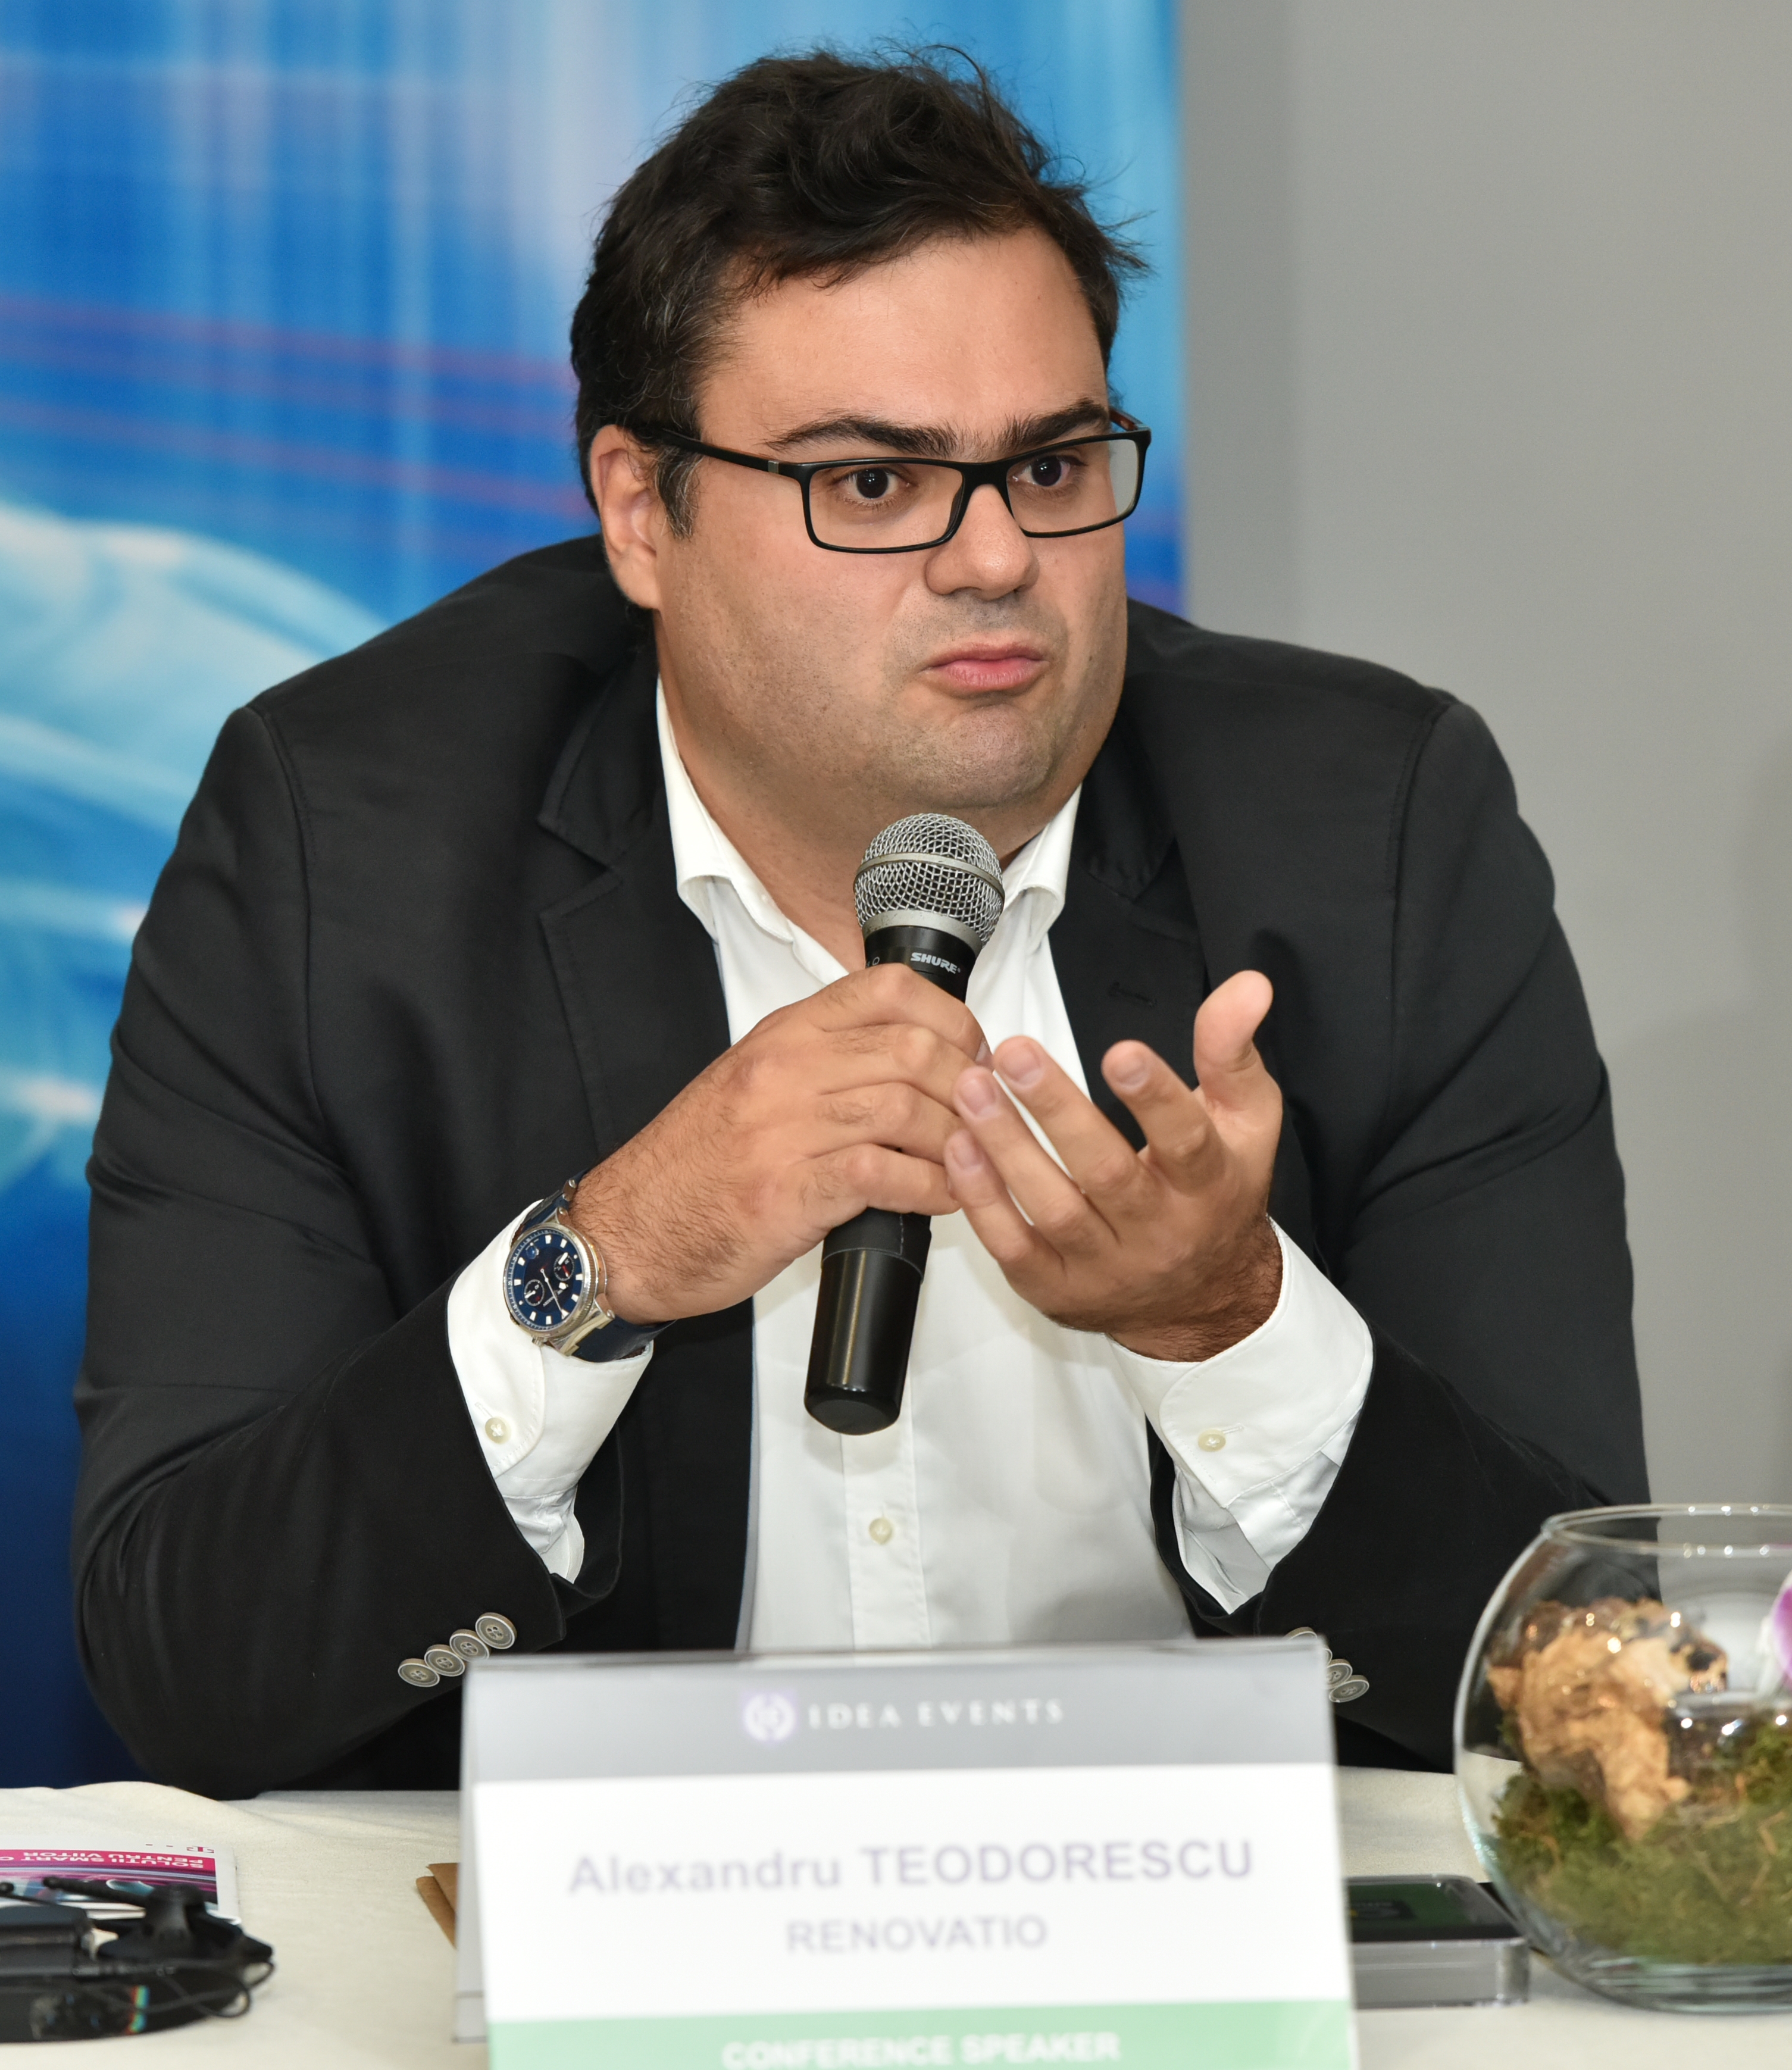 Alexandru Teodorescu